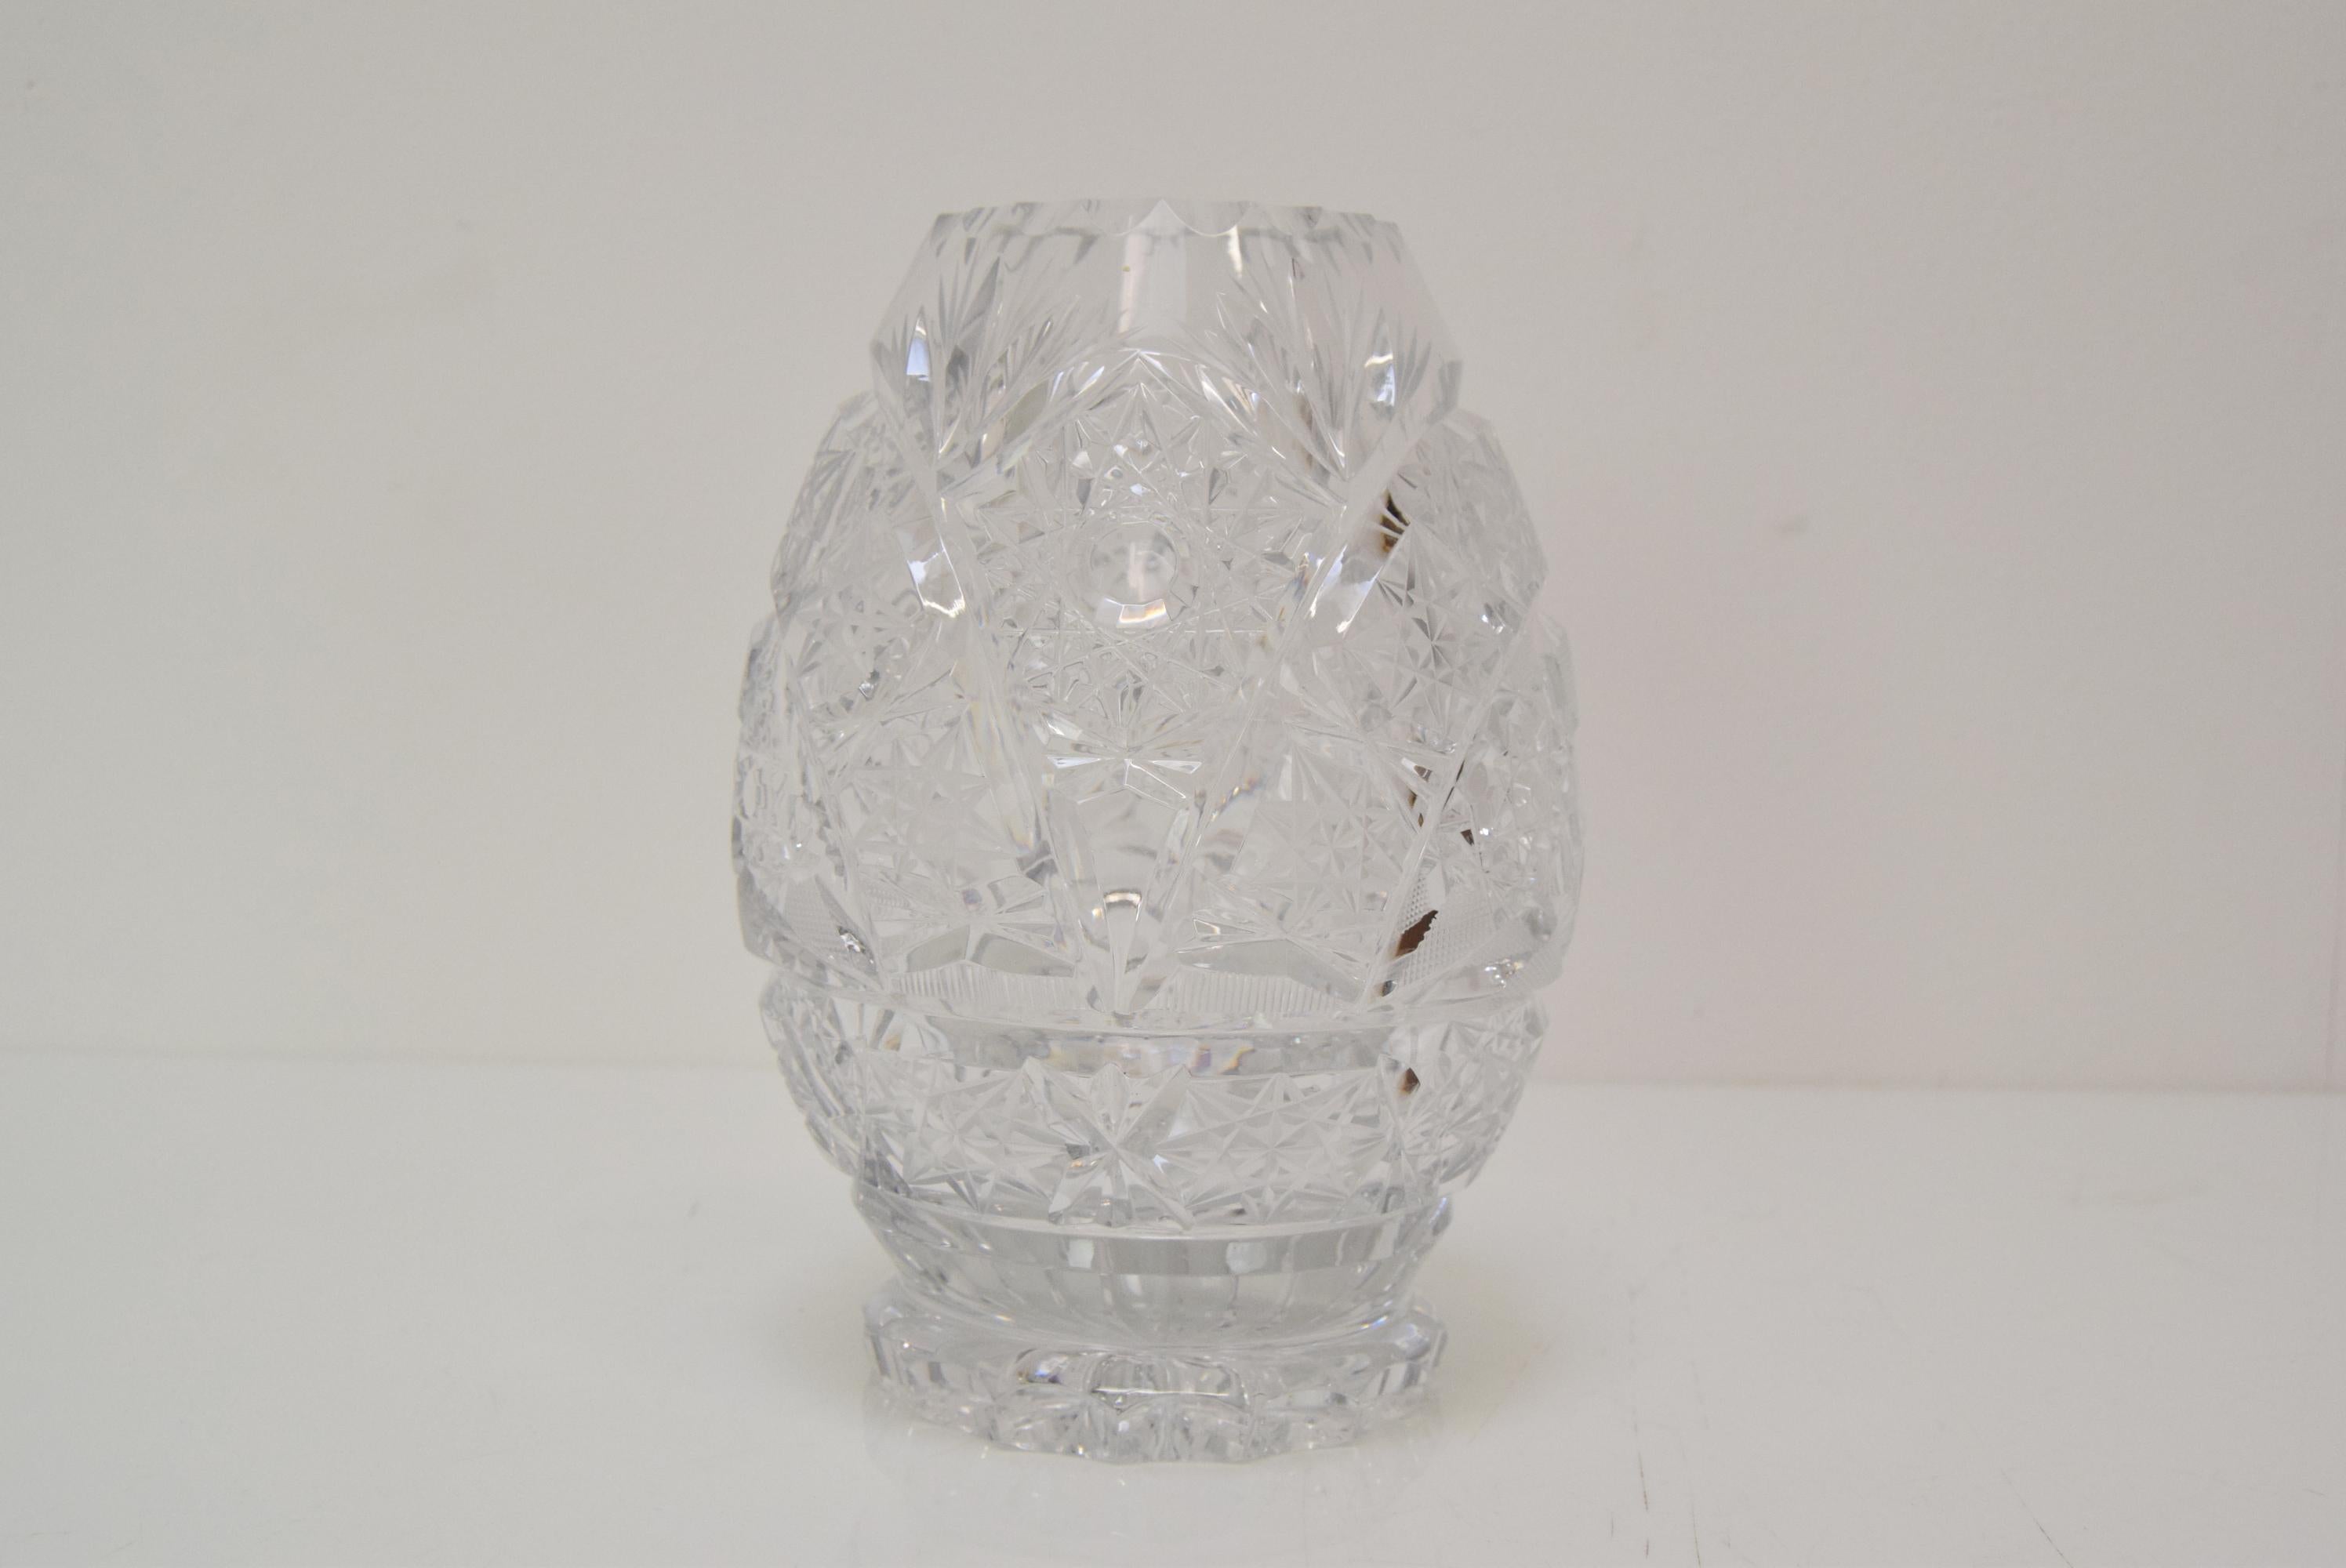 
Fabriqué en Tchécoslovaquie
Fabriqué en verre de cristal, verre taillé
Fabriqué à la main
Repolissage
Bon état d'origine